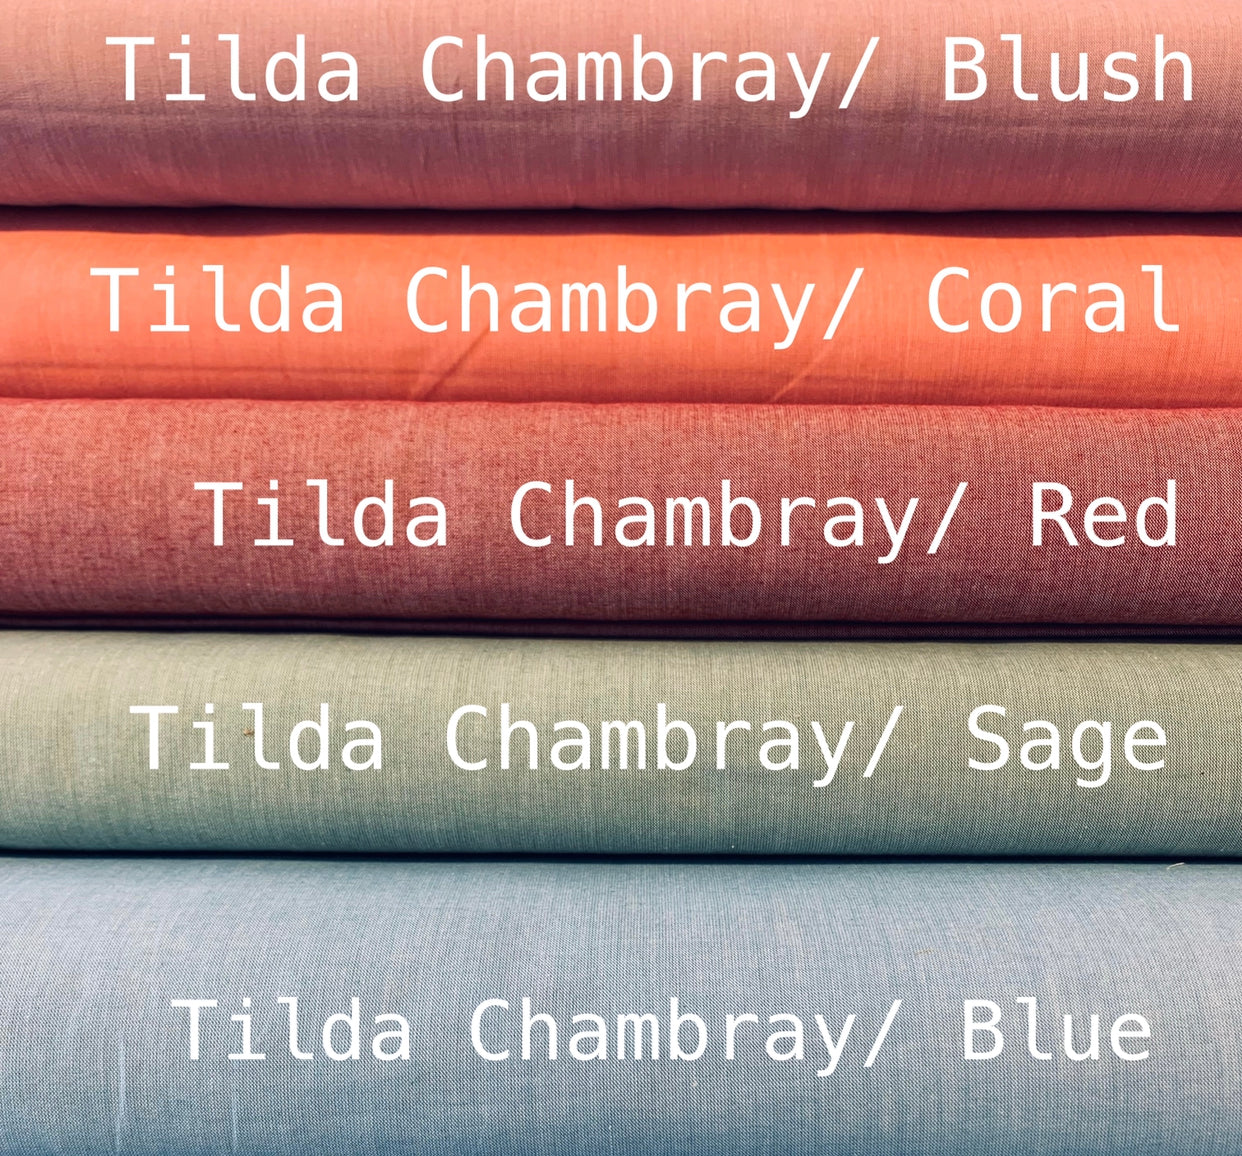 Tilda Chambray: Coral